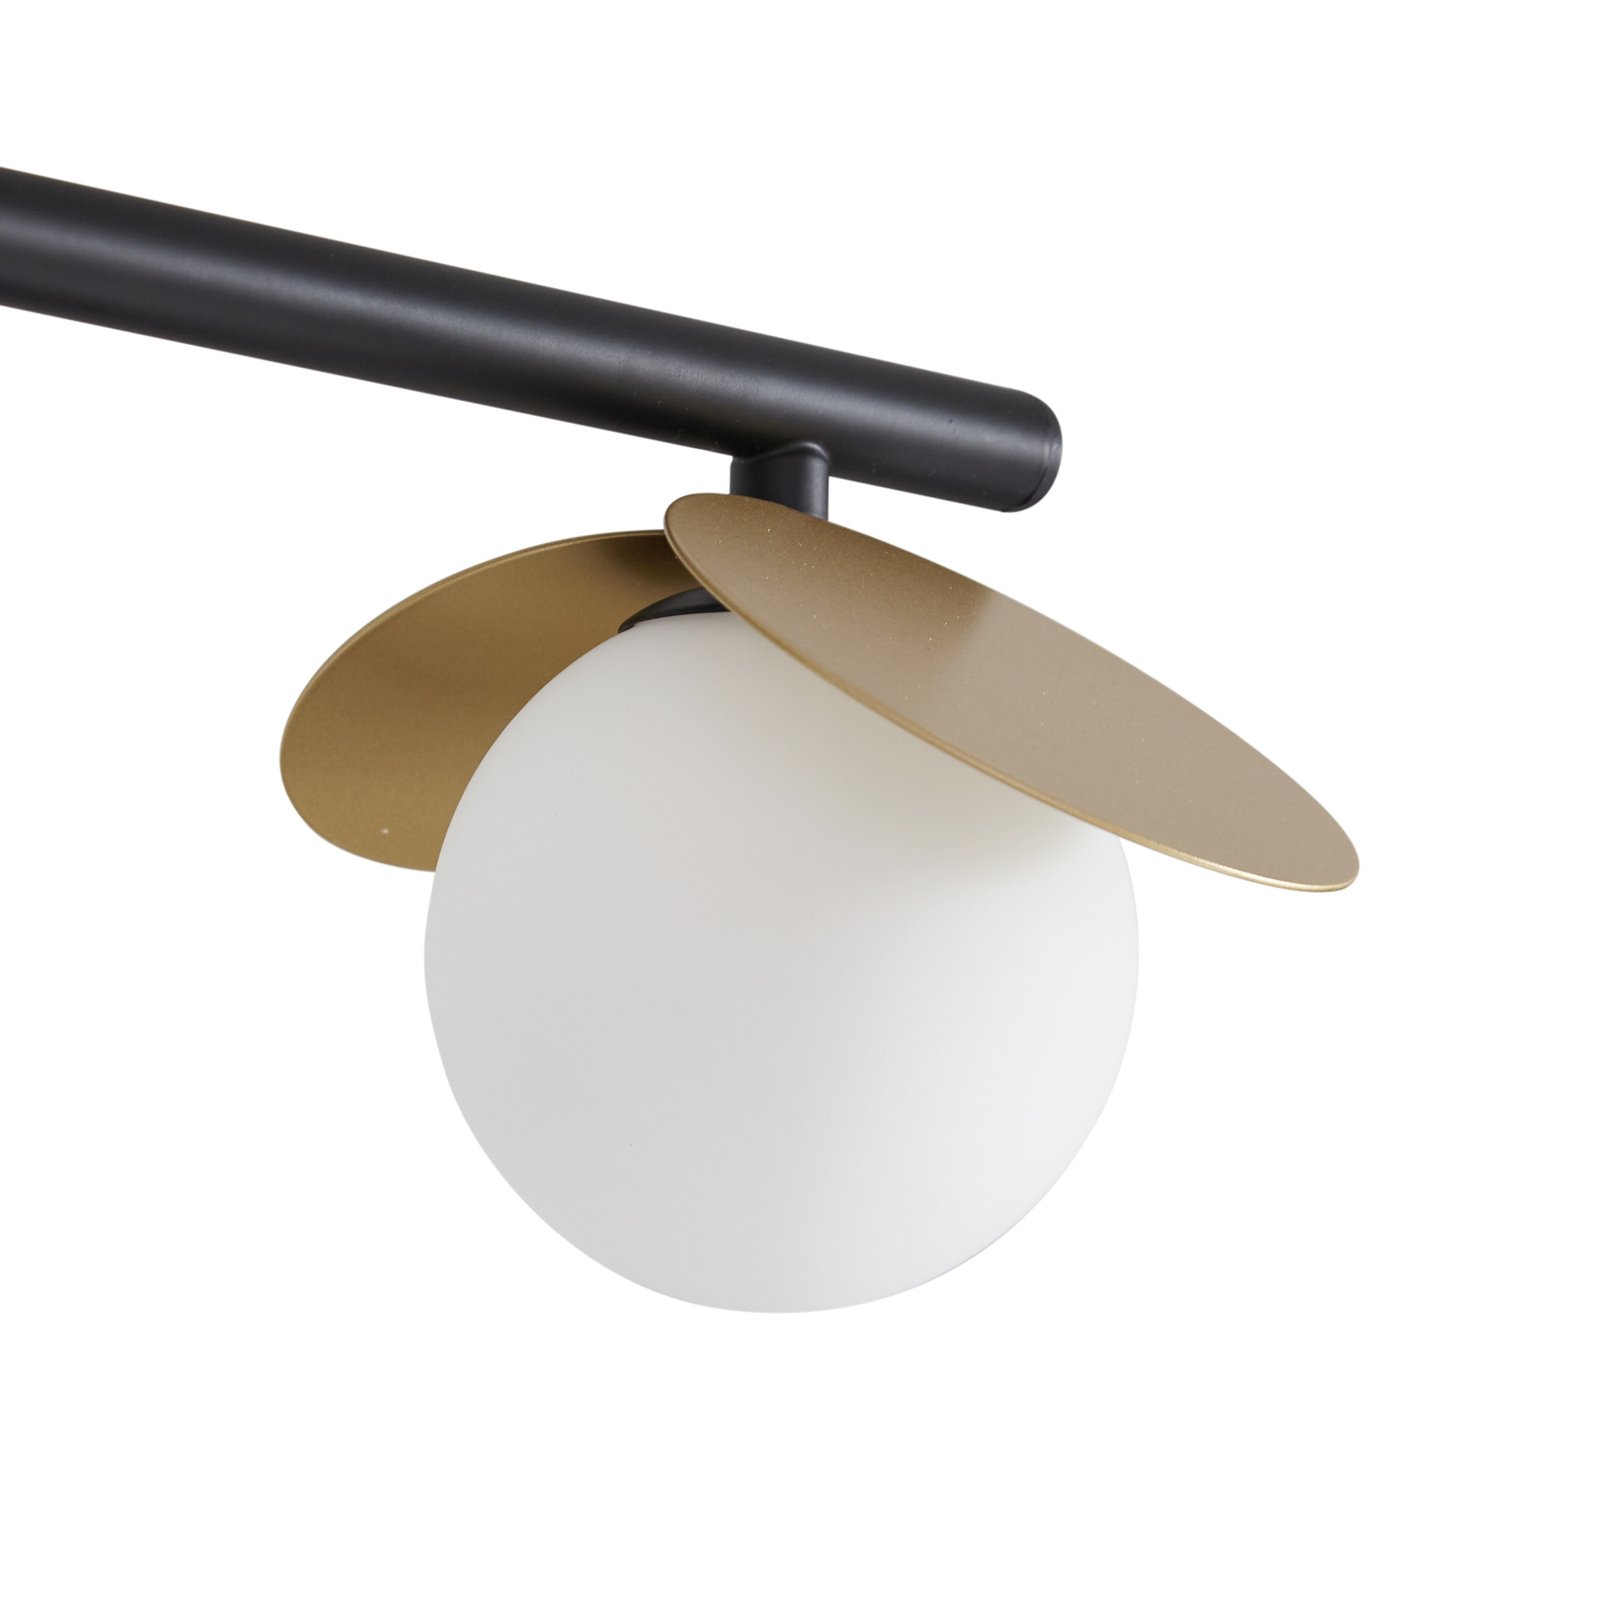 Lucande Pallo LED stropna svjetiljka, linearna, 4 žarulje, crna/zlatna